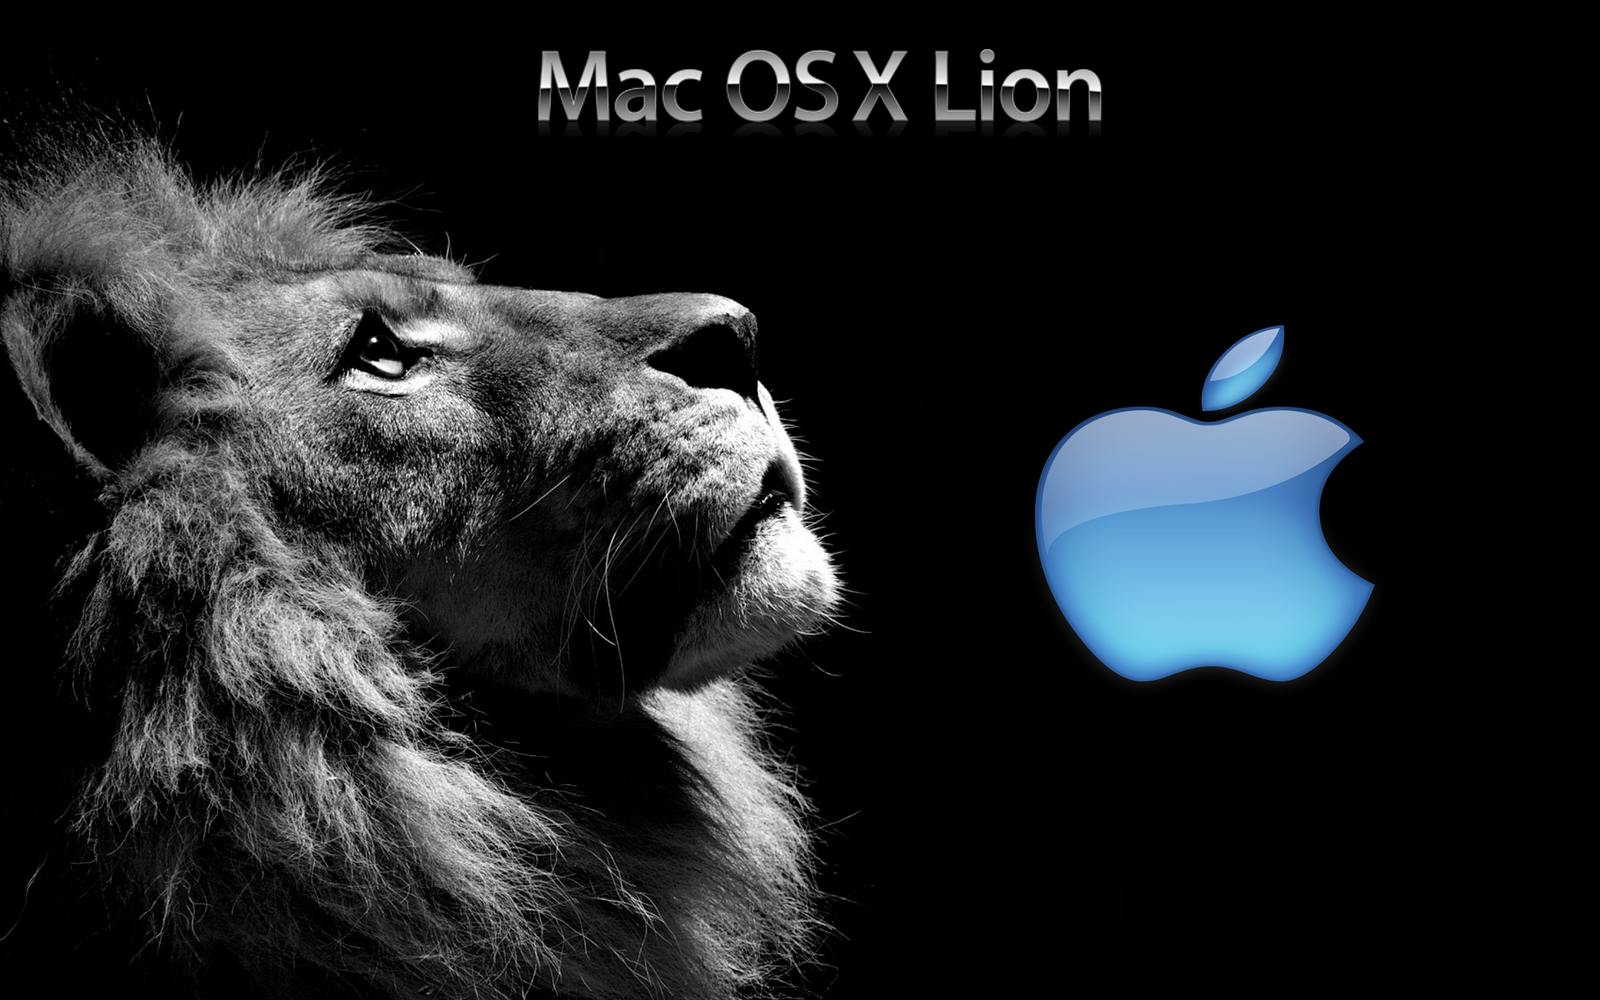 http://3.bp.blogspot.com/-SUZX3ukrcxY/T6So63IDWfI/AAAAAAAAAHI/rHBaRqYve6E/s1600/Mac-OS-X-Lion-Wallpaper-Black-Blue.png